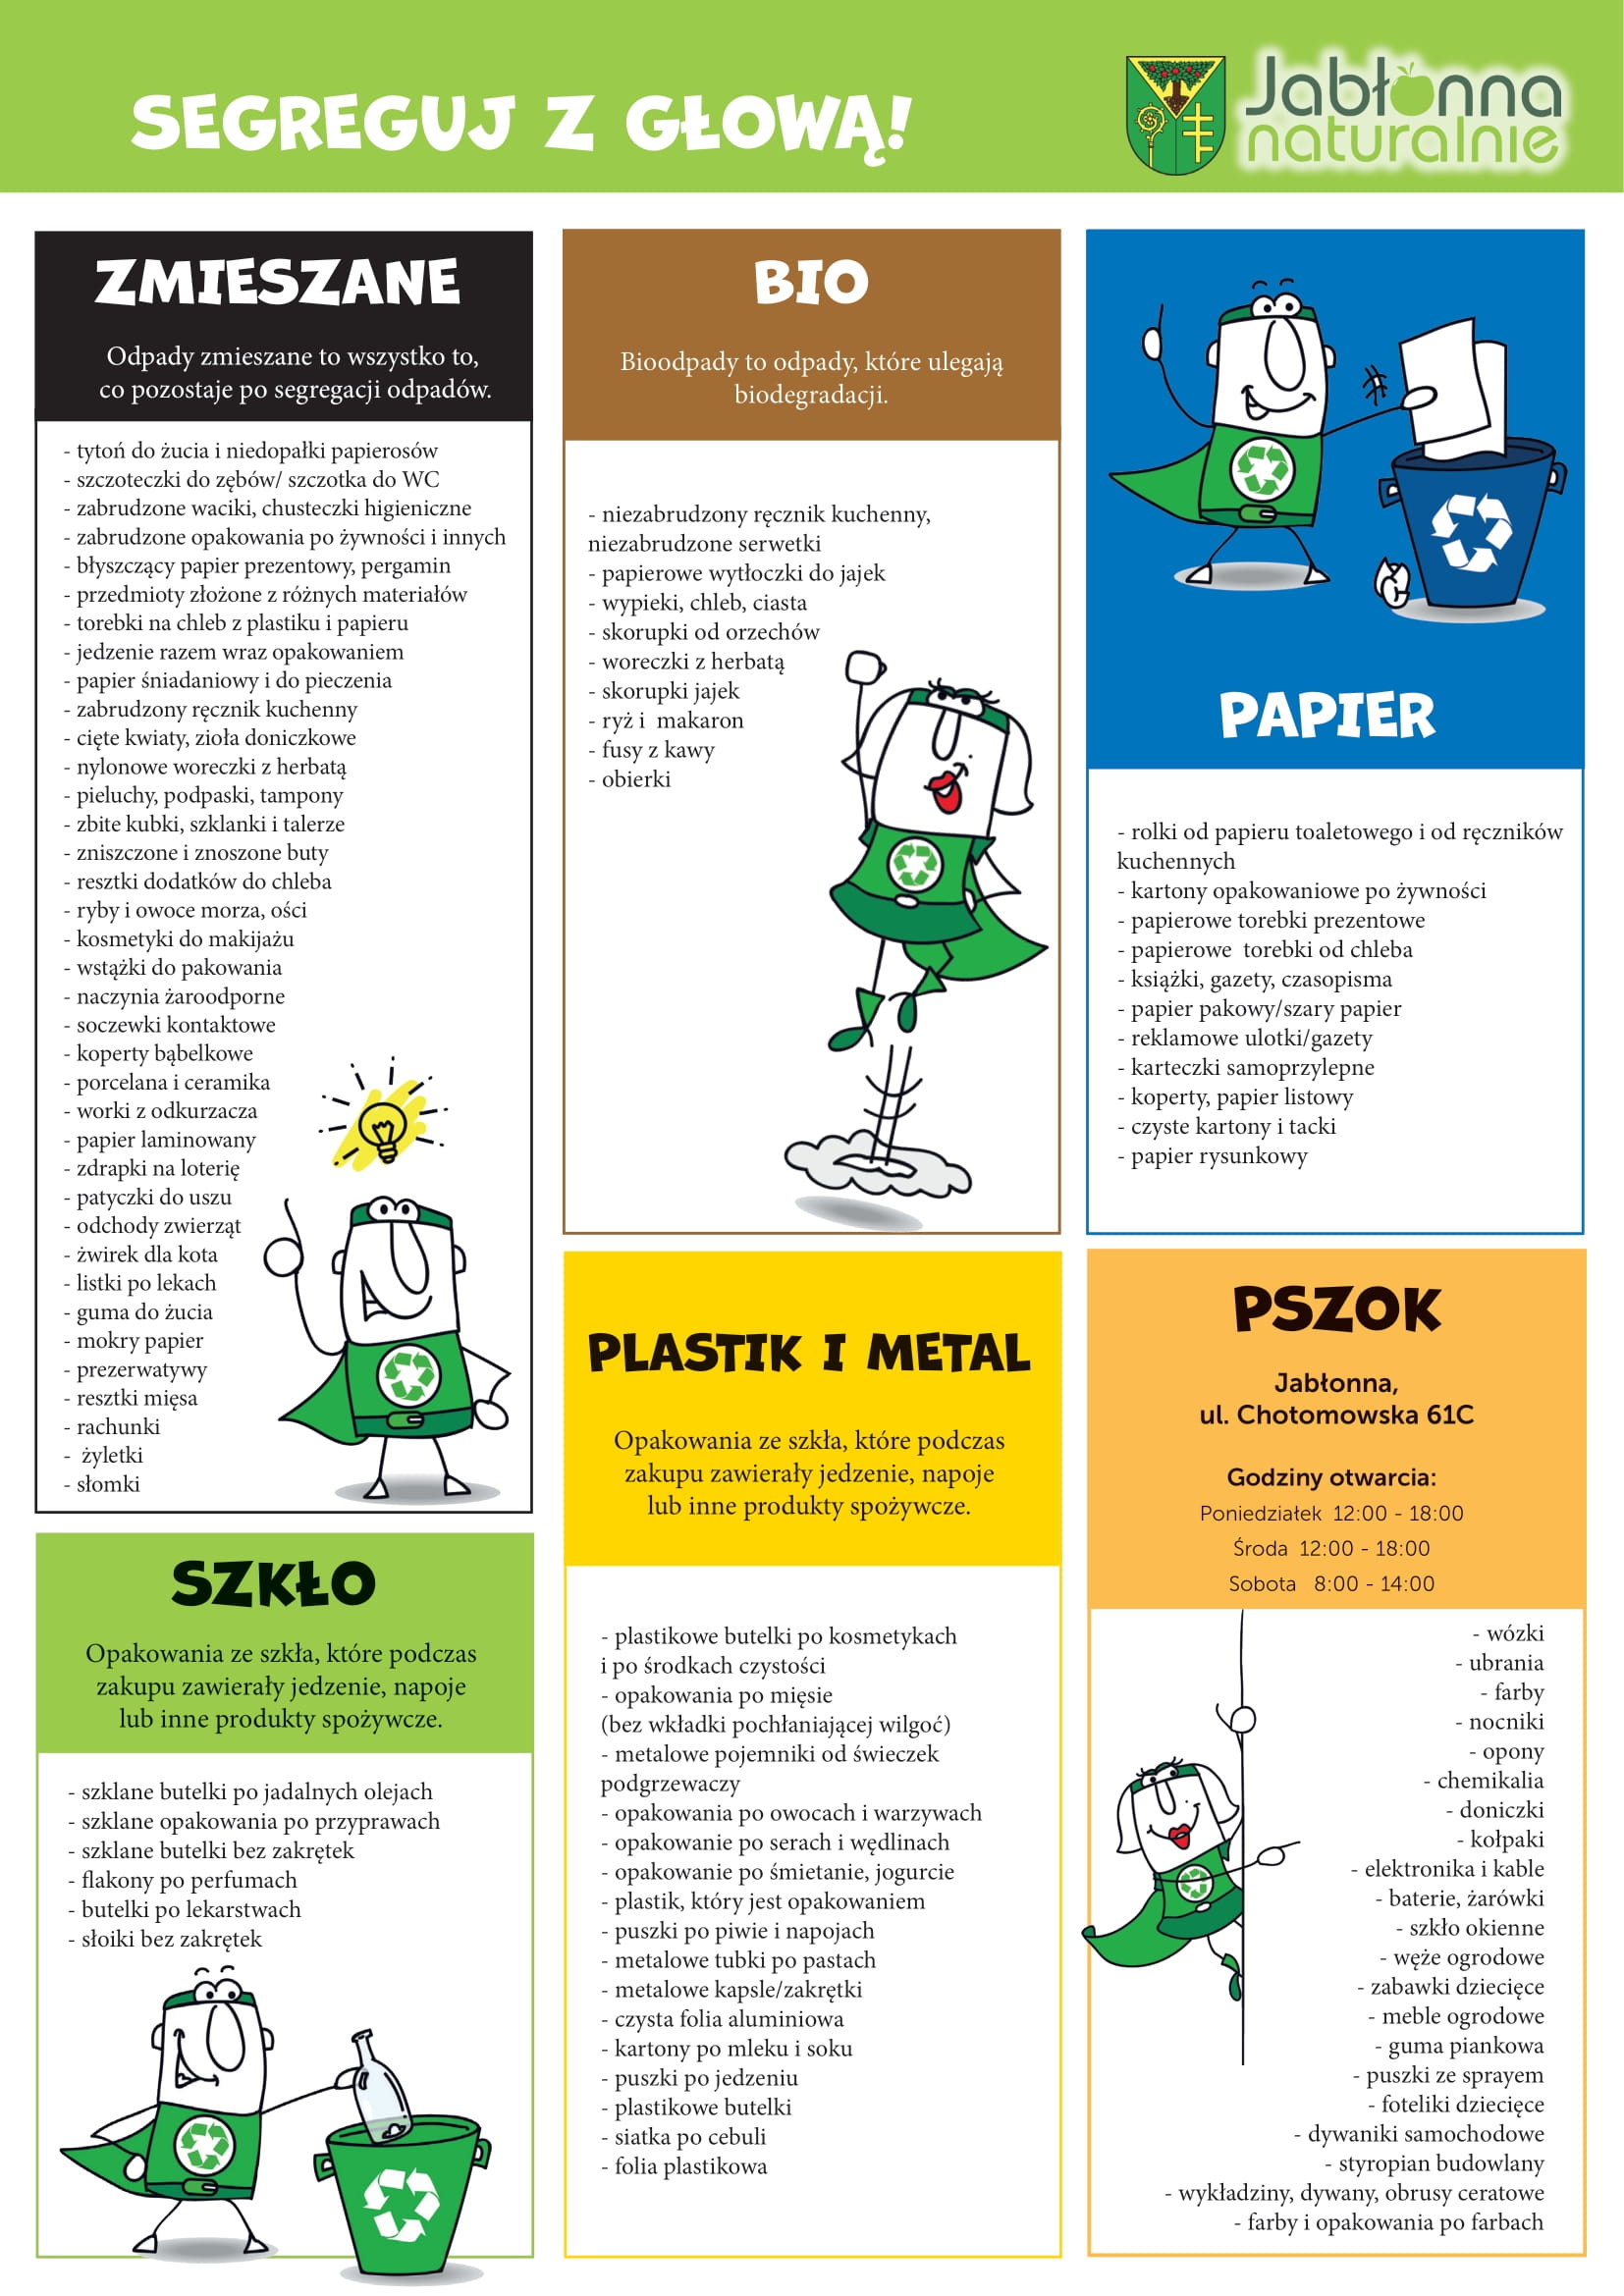 Plakat informujący o prawidłowym segregowaniu odpadów